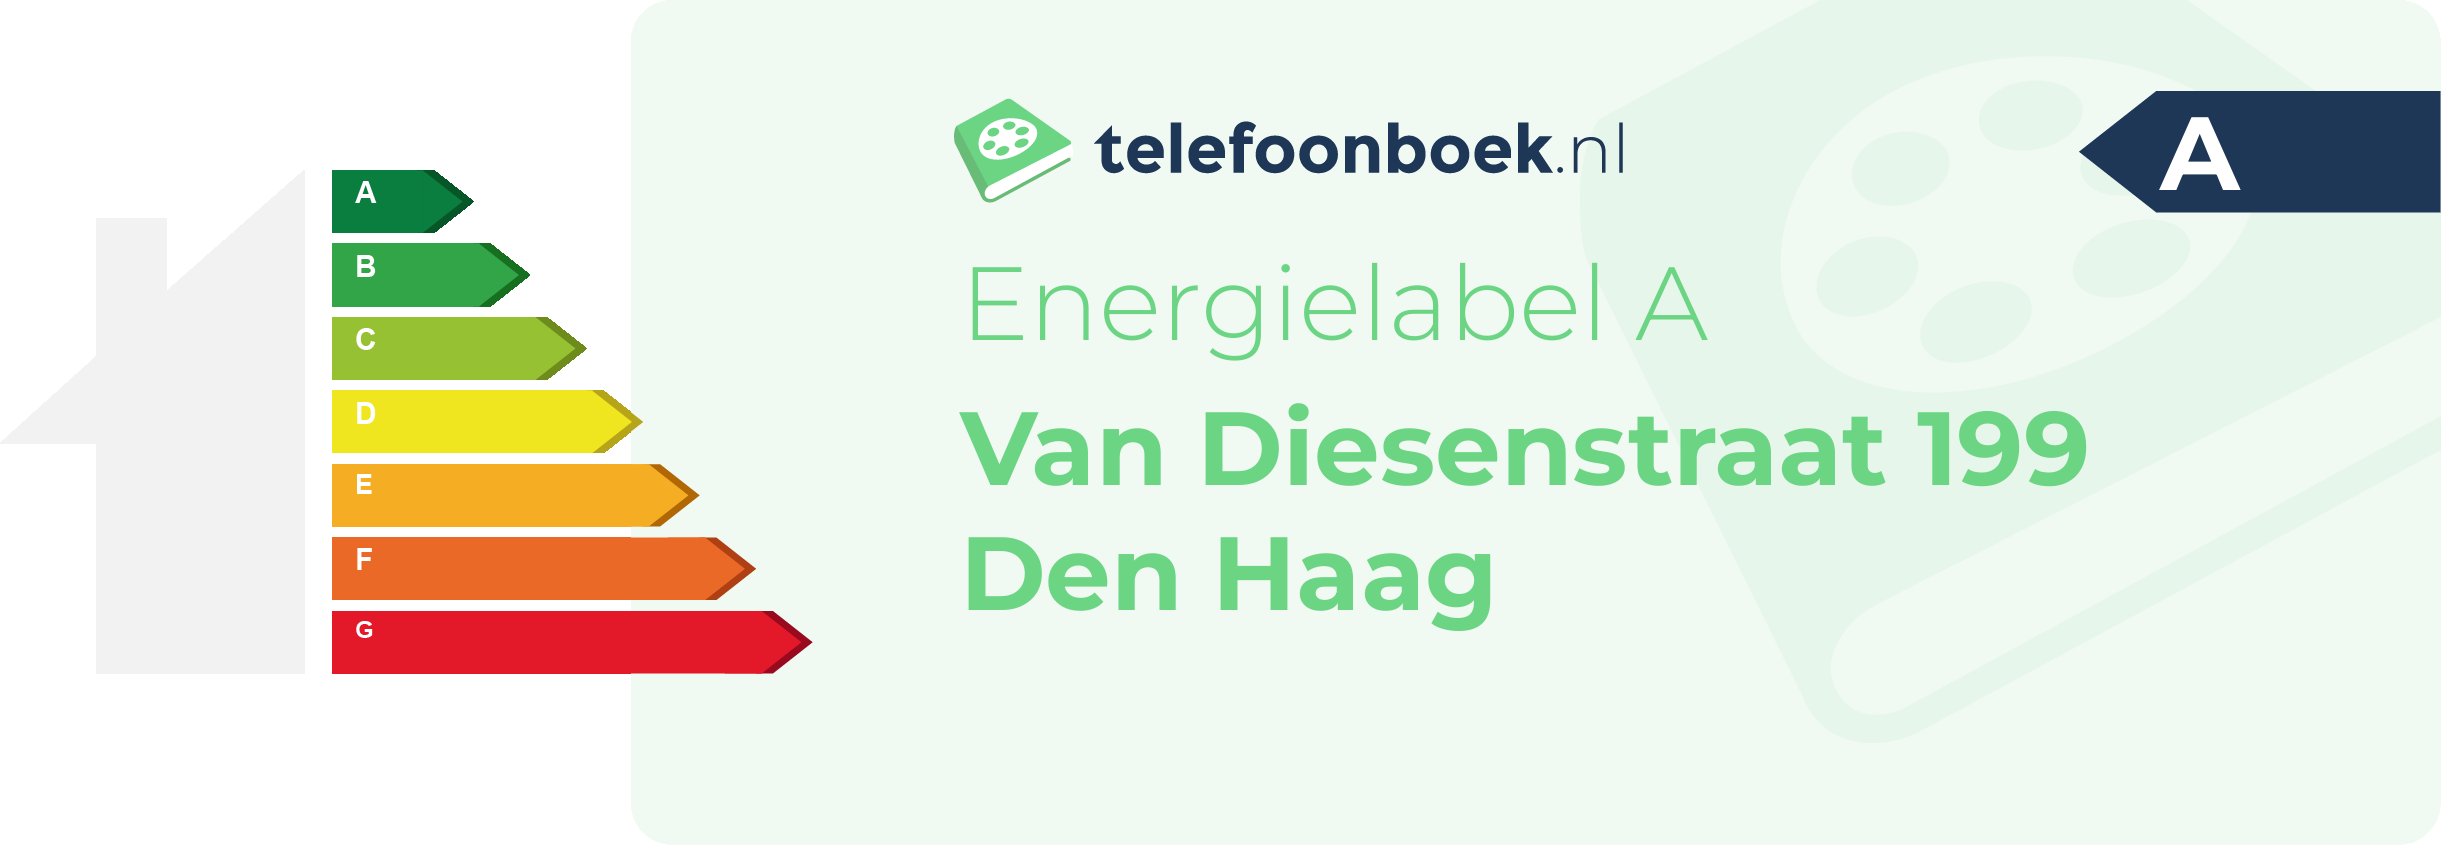 Energielabel Van Diesenstraat 199 Den Haag